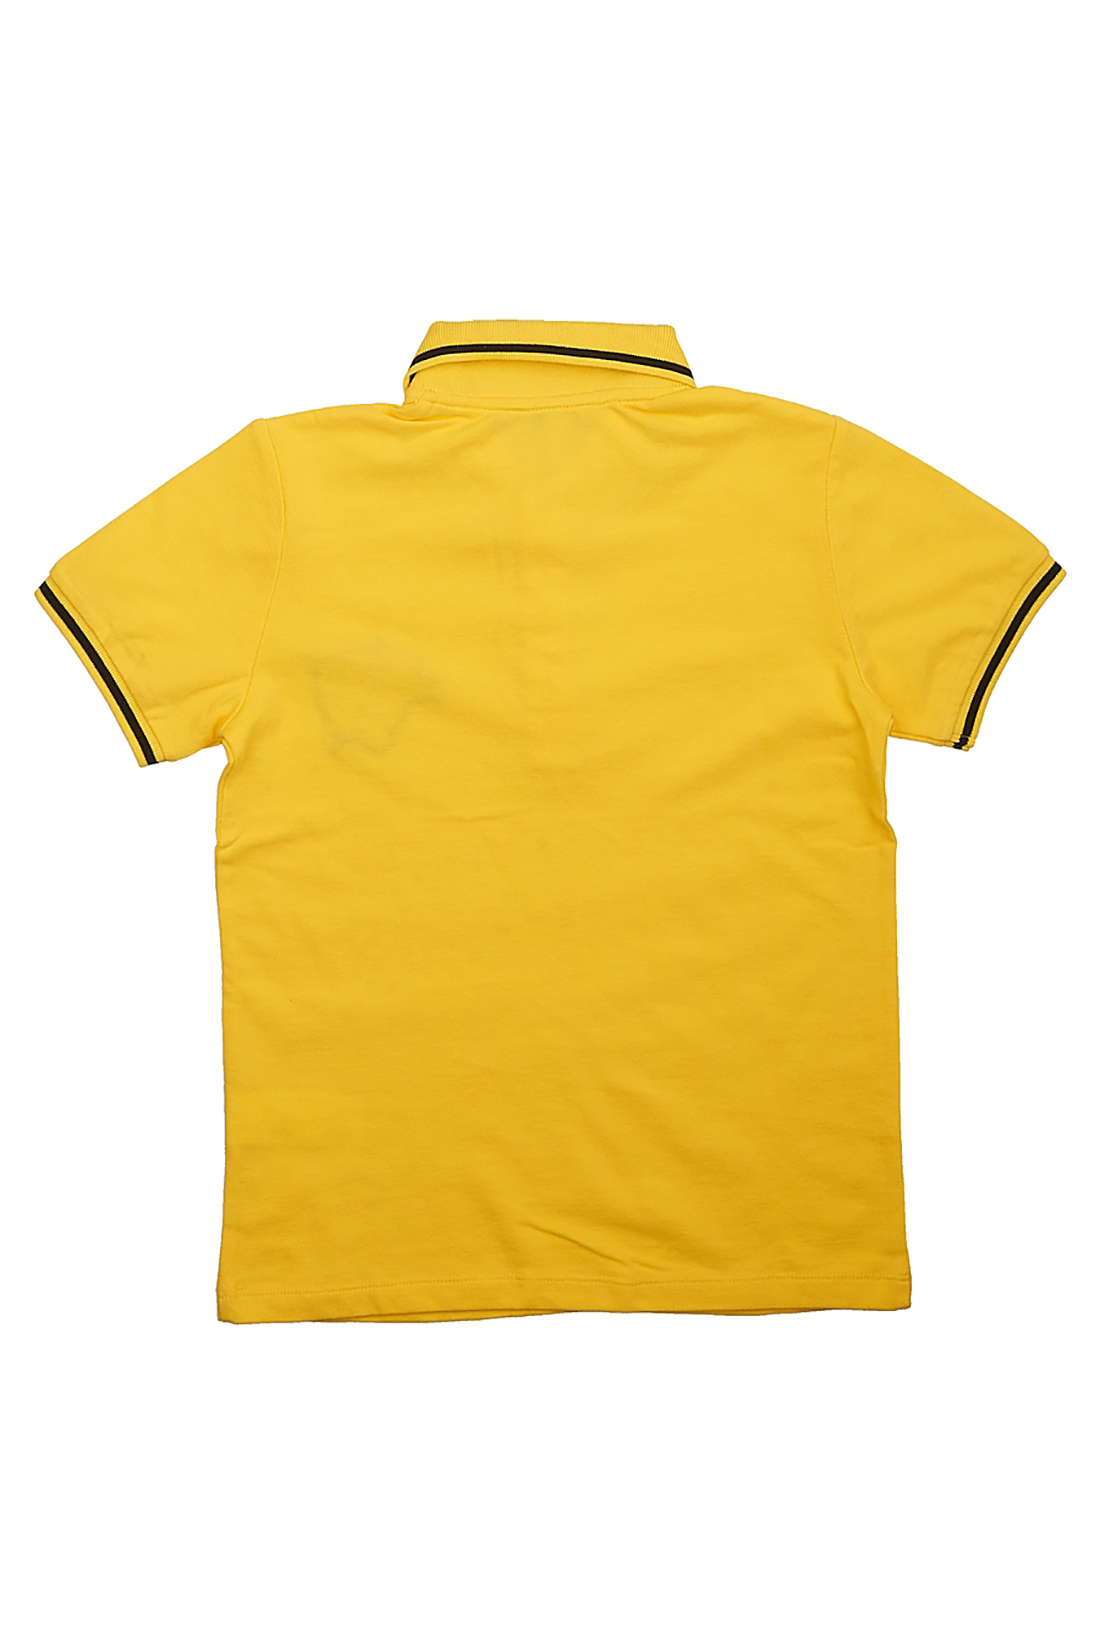 Поло для мальчика (арт. baon BJ708002), размер 146-152, цвет желтый Поло для мальчика (арт. baon BJ708002) - фото 3